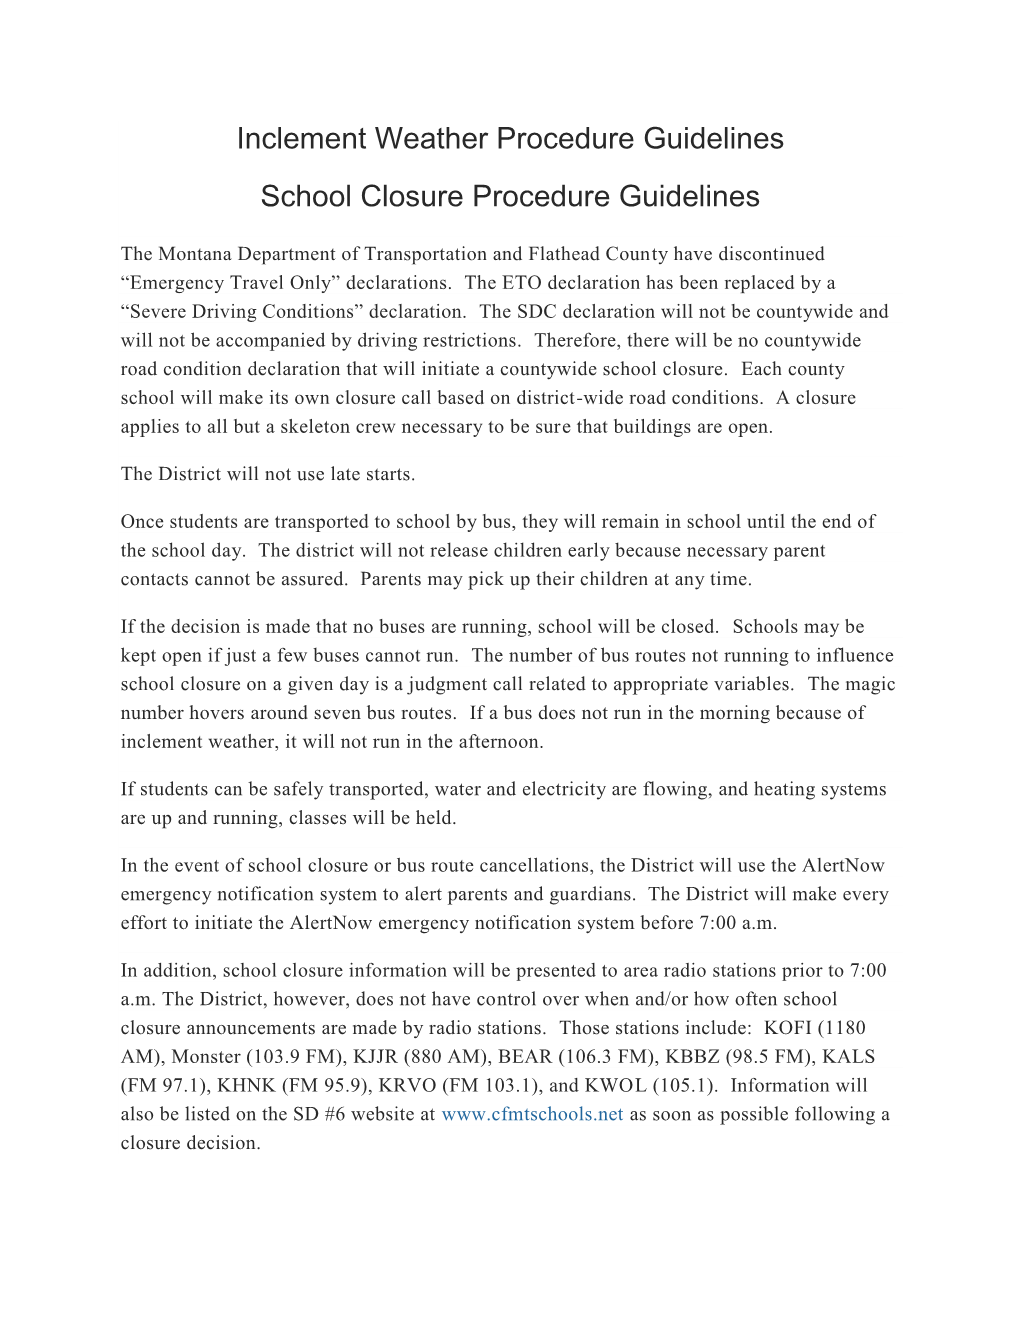 Inclement Weather Procedure Guidelines School Closure Procedure